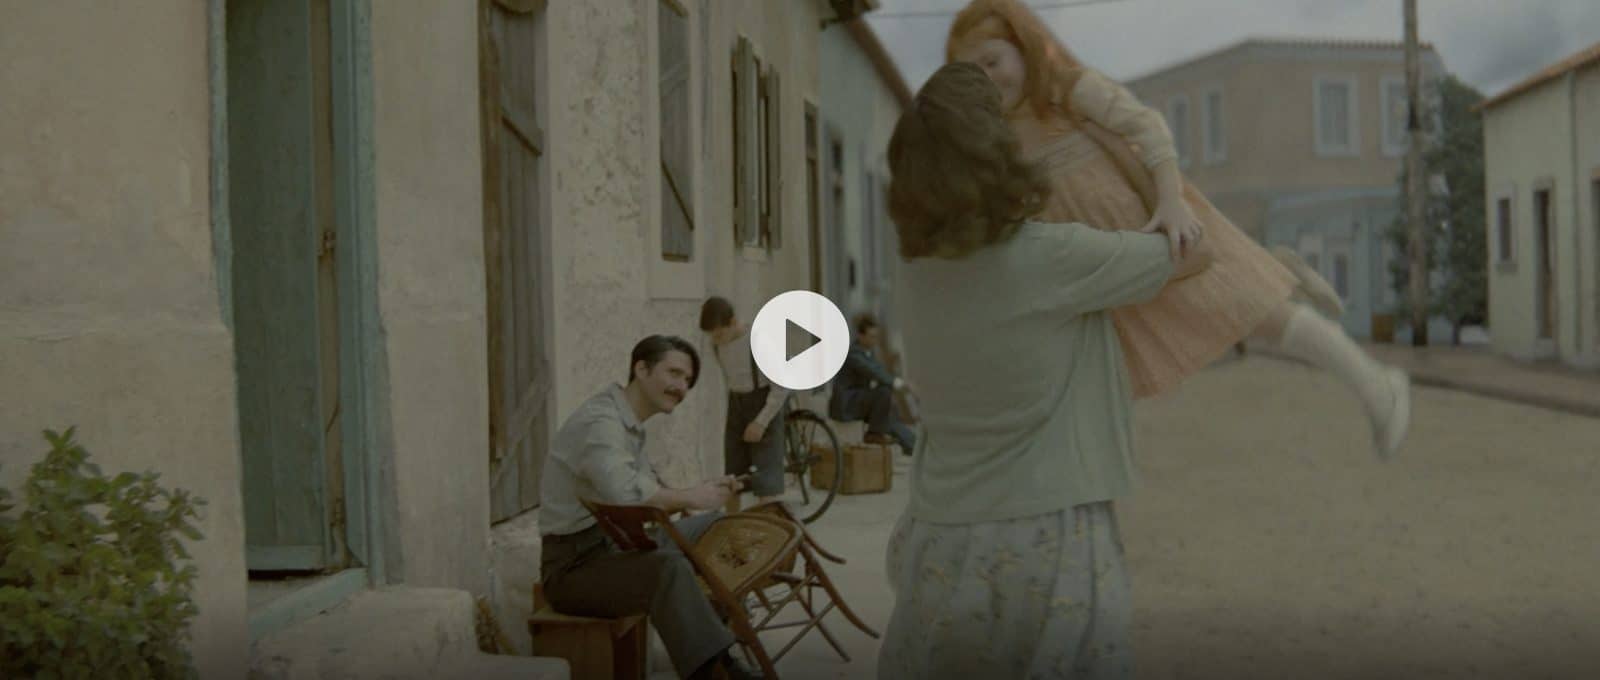 Διαφημιστική ταινία για τον εορτασμό των 100 χρόνων της εταιρείας Παπαδοπούλου